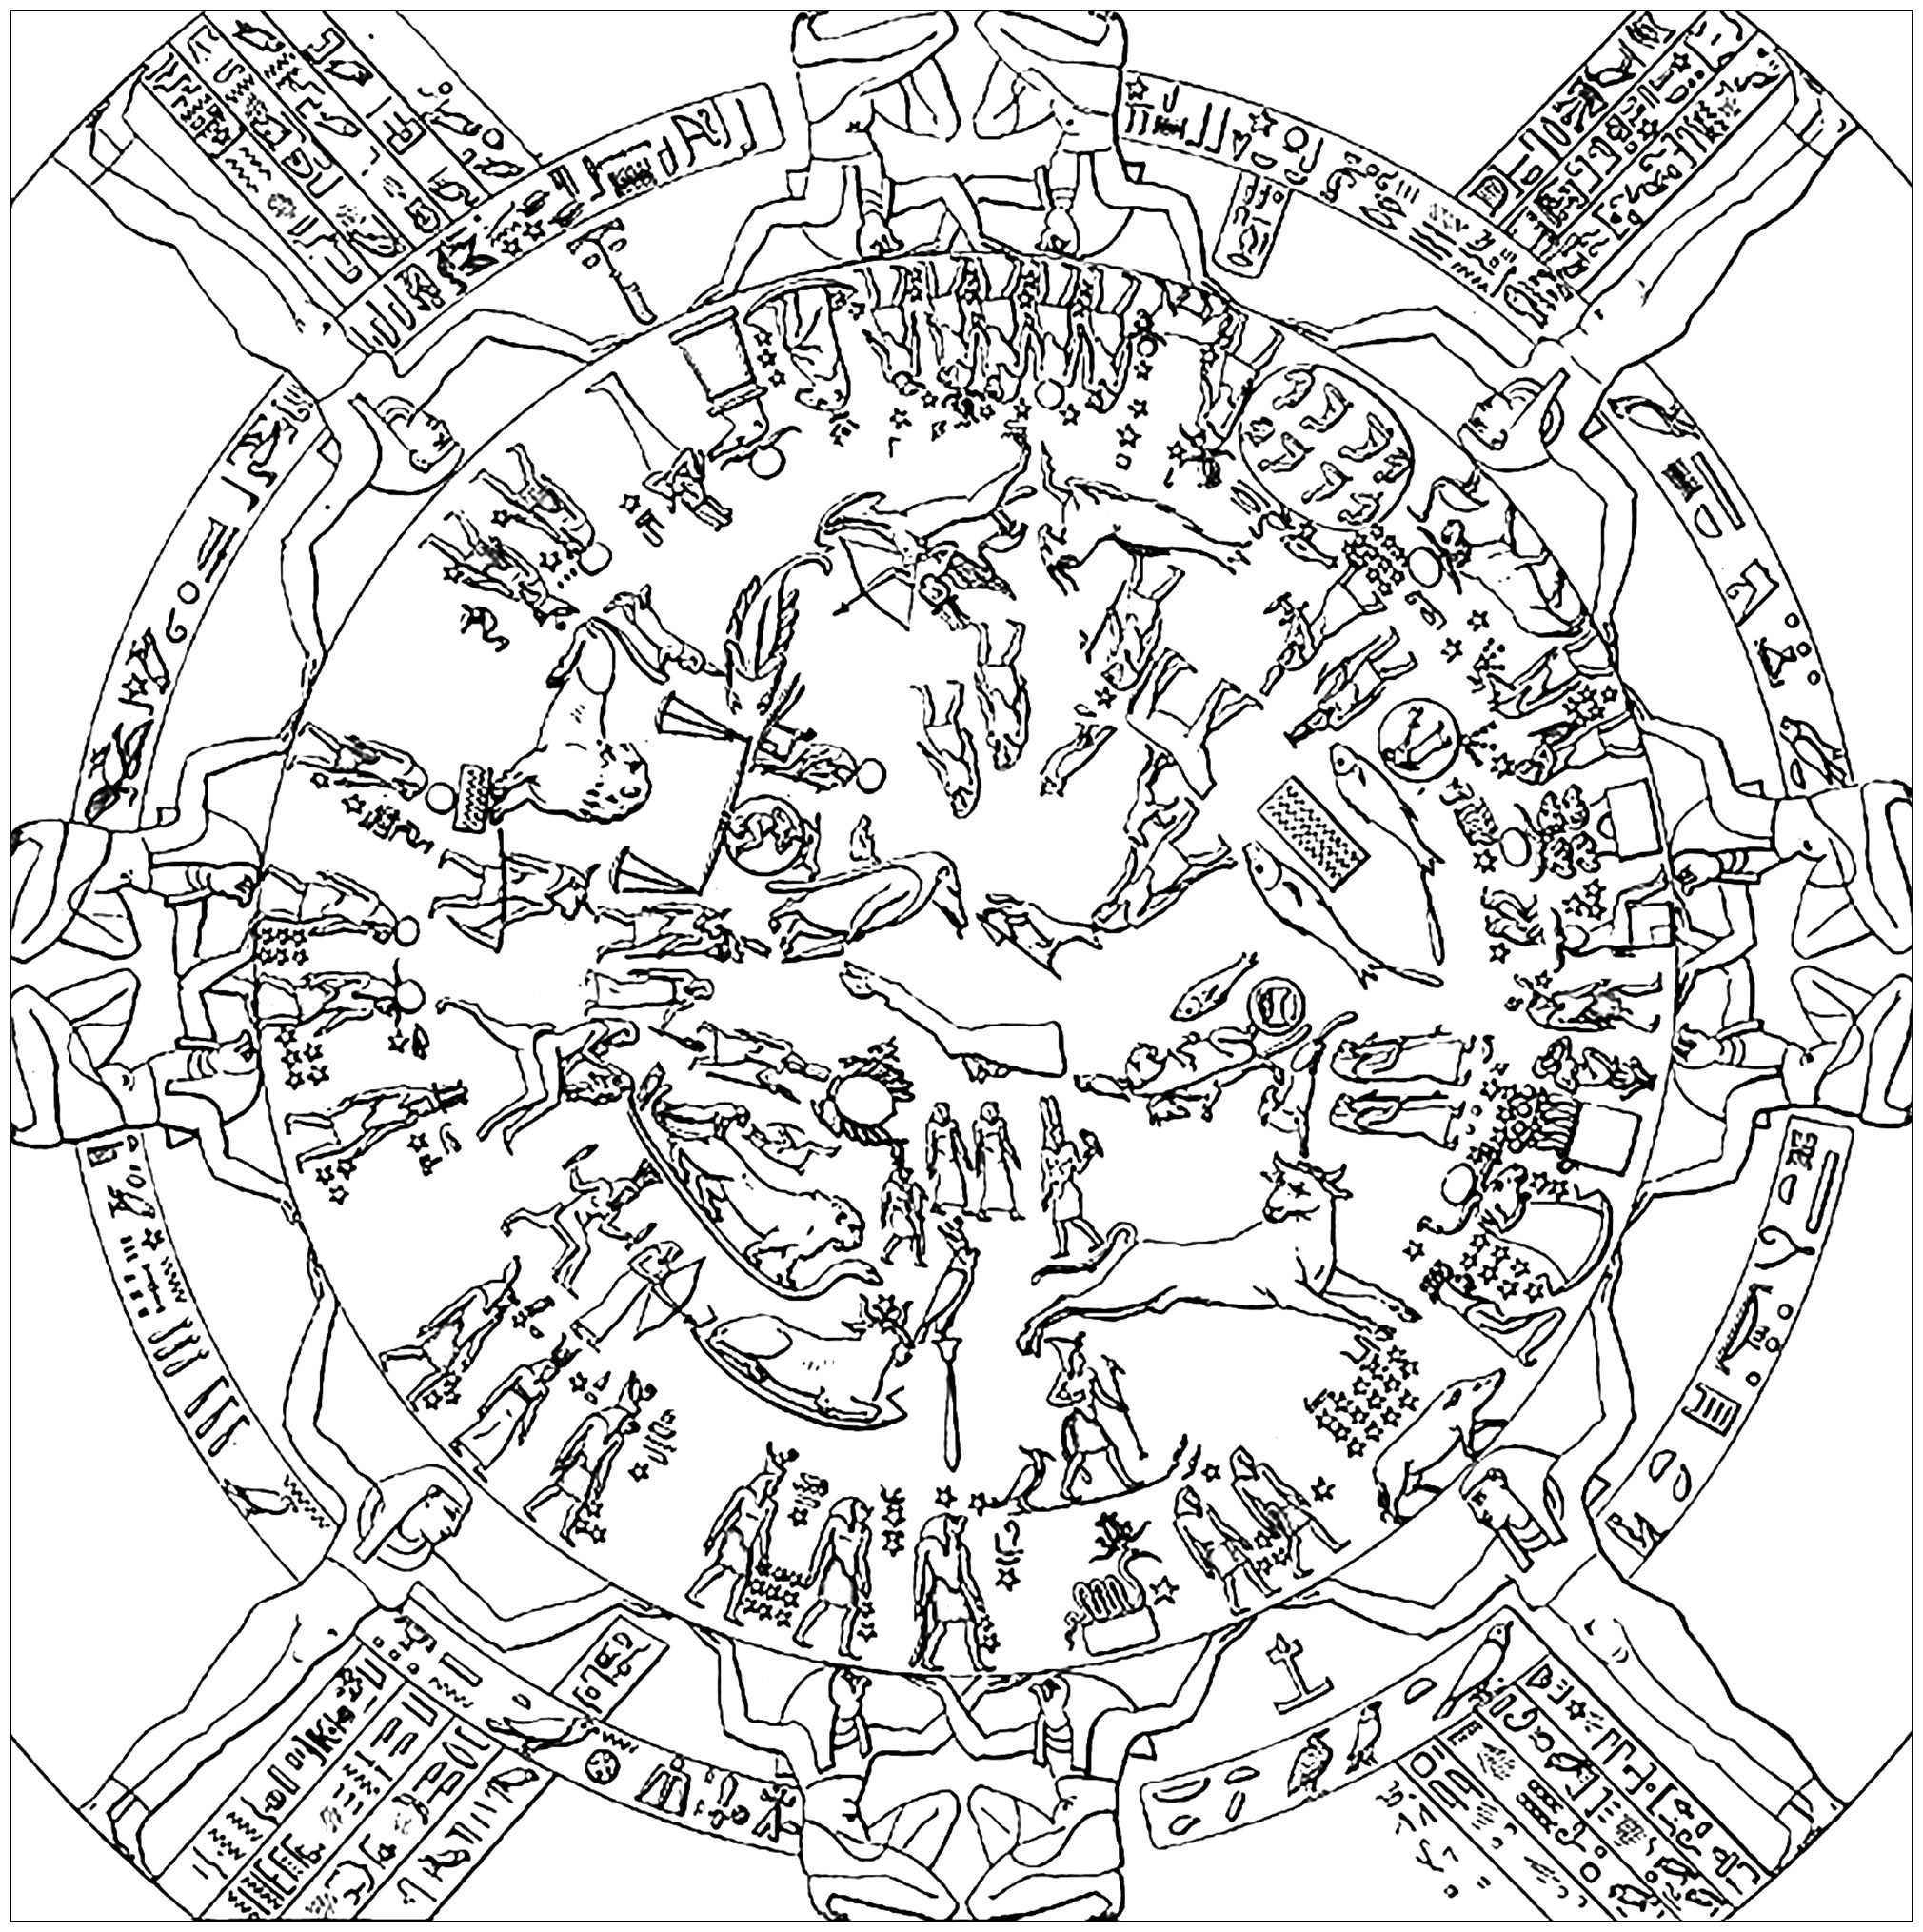 Pagina da colorare creata dal primo disegno dello Zodiaco di Dendera (1802). Lo Zodiaco di Dendera è una delle rappresentazioni antiche meglio conservate delle stelle osservabili. Sebbene contenga molti dei simboli dello Zodiaco come sono conosciuti oggi, è più precisamente descritto come una mappa stellare che come una carta astrologica. Mostra tutti e cinque i pianeti conosciuti dagli antichi Egizi in un allineamento che si verifica una volta ogni mille anni, oltre a un'eclissi solare e lunare. L'allineamento dei pianeti consente agli astrofisici di datare il cielo raffigurato come avvenuto tra il 15 giugno e il 15 agosto del 50 a.C..